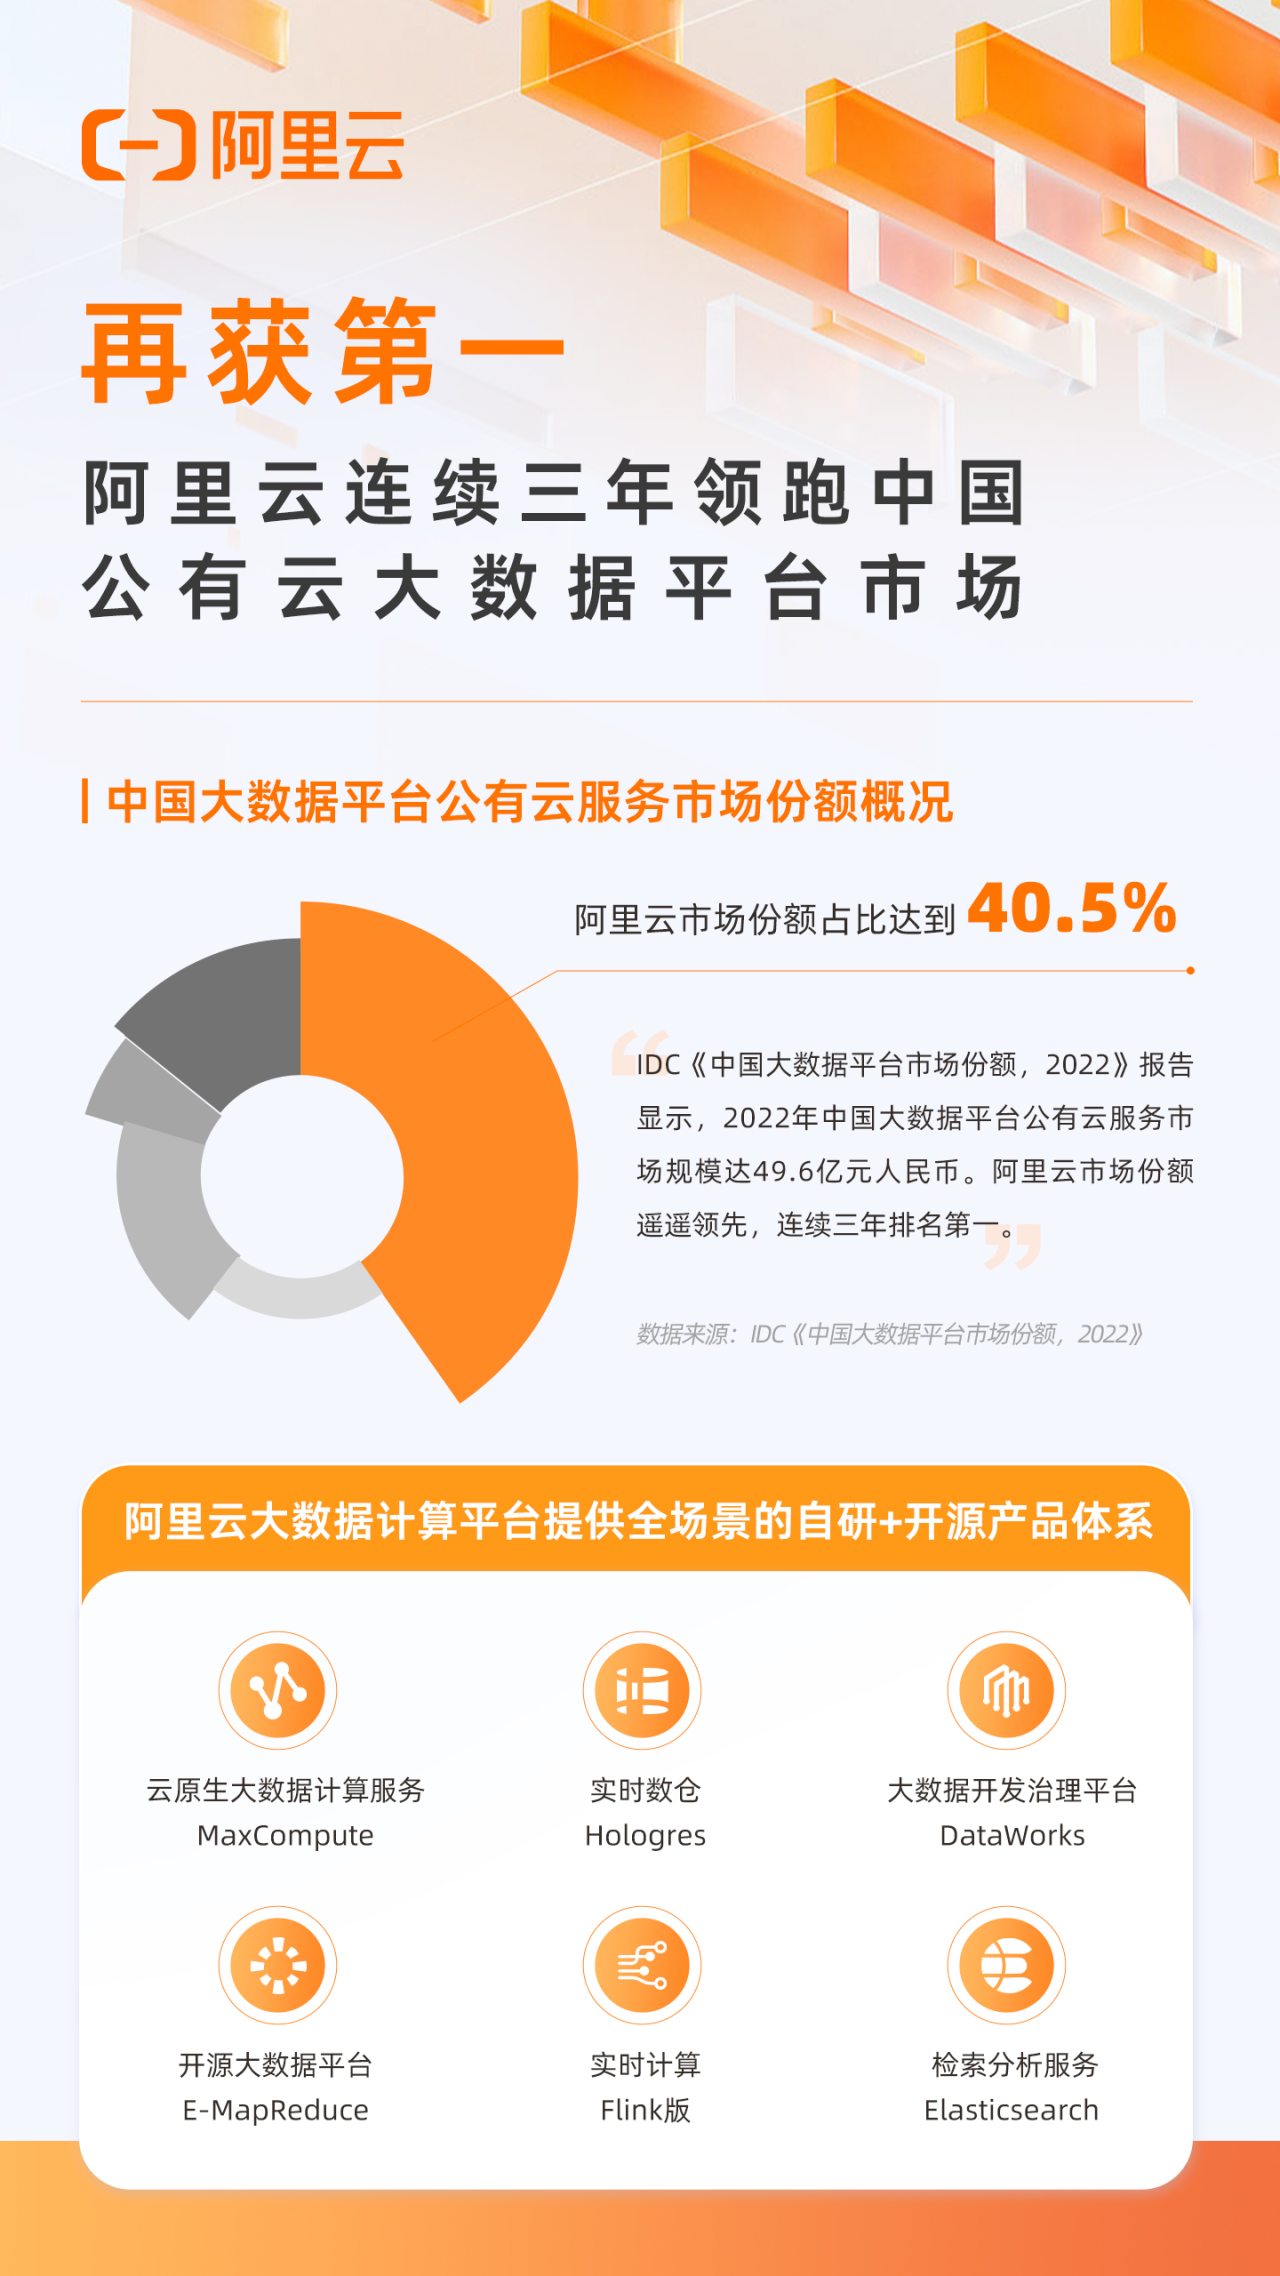 阿里云连续三年领跑中国公有云大数据平台市场